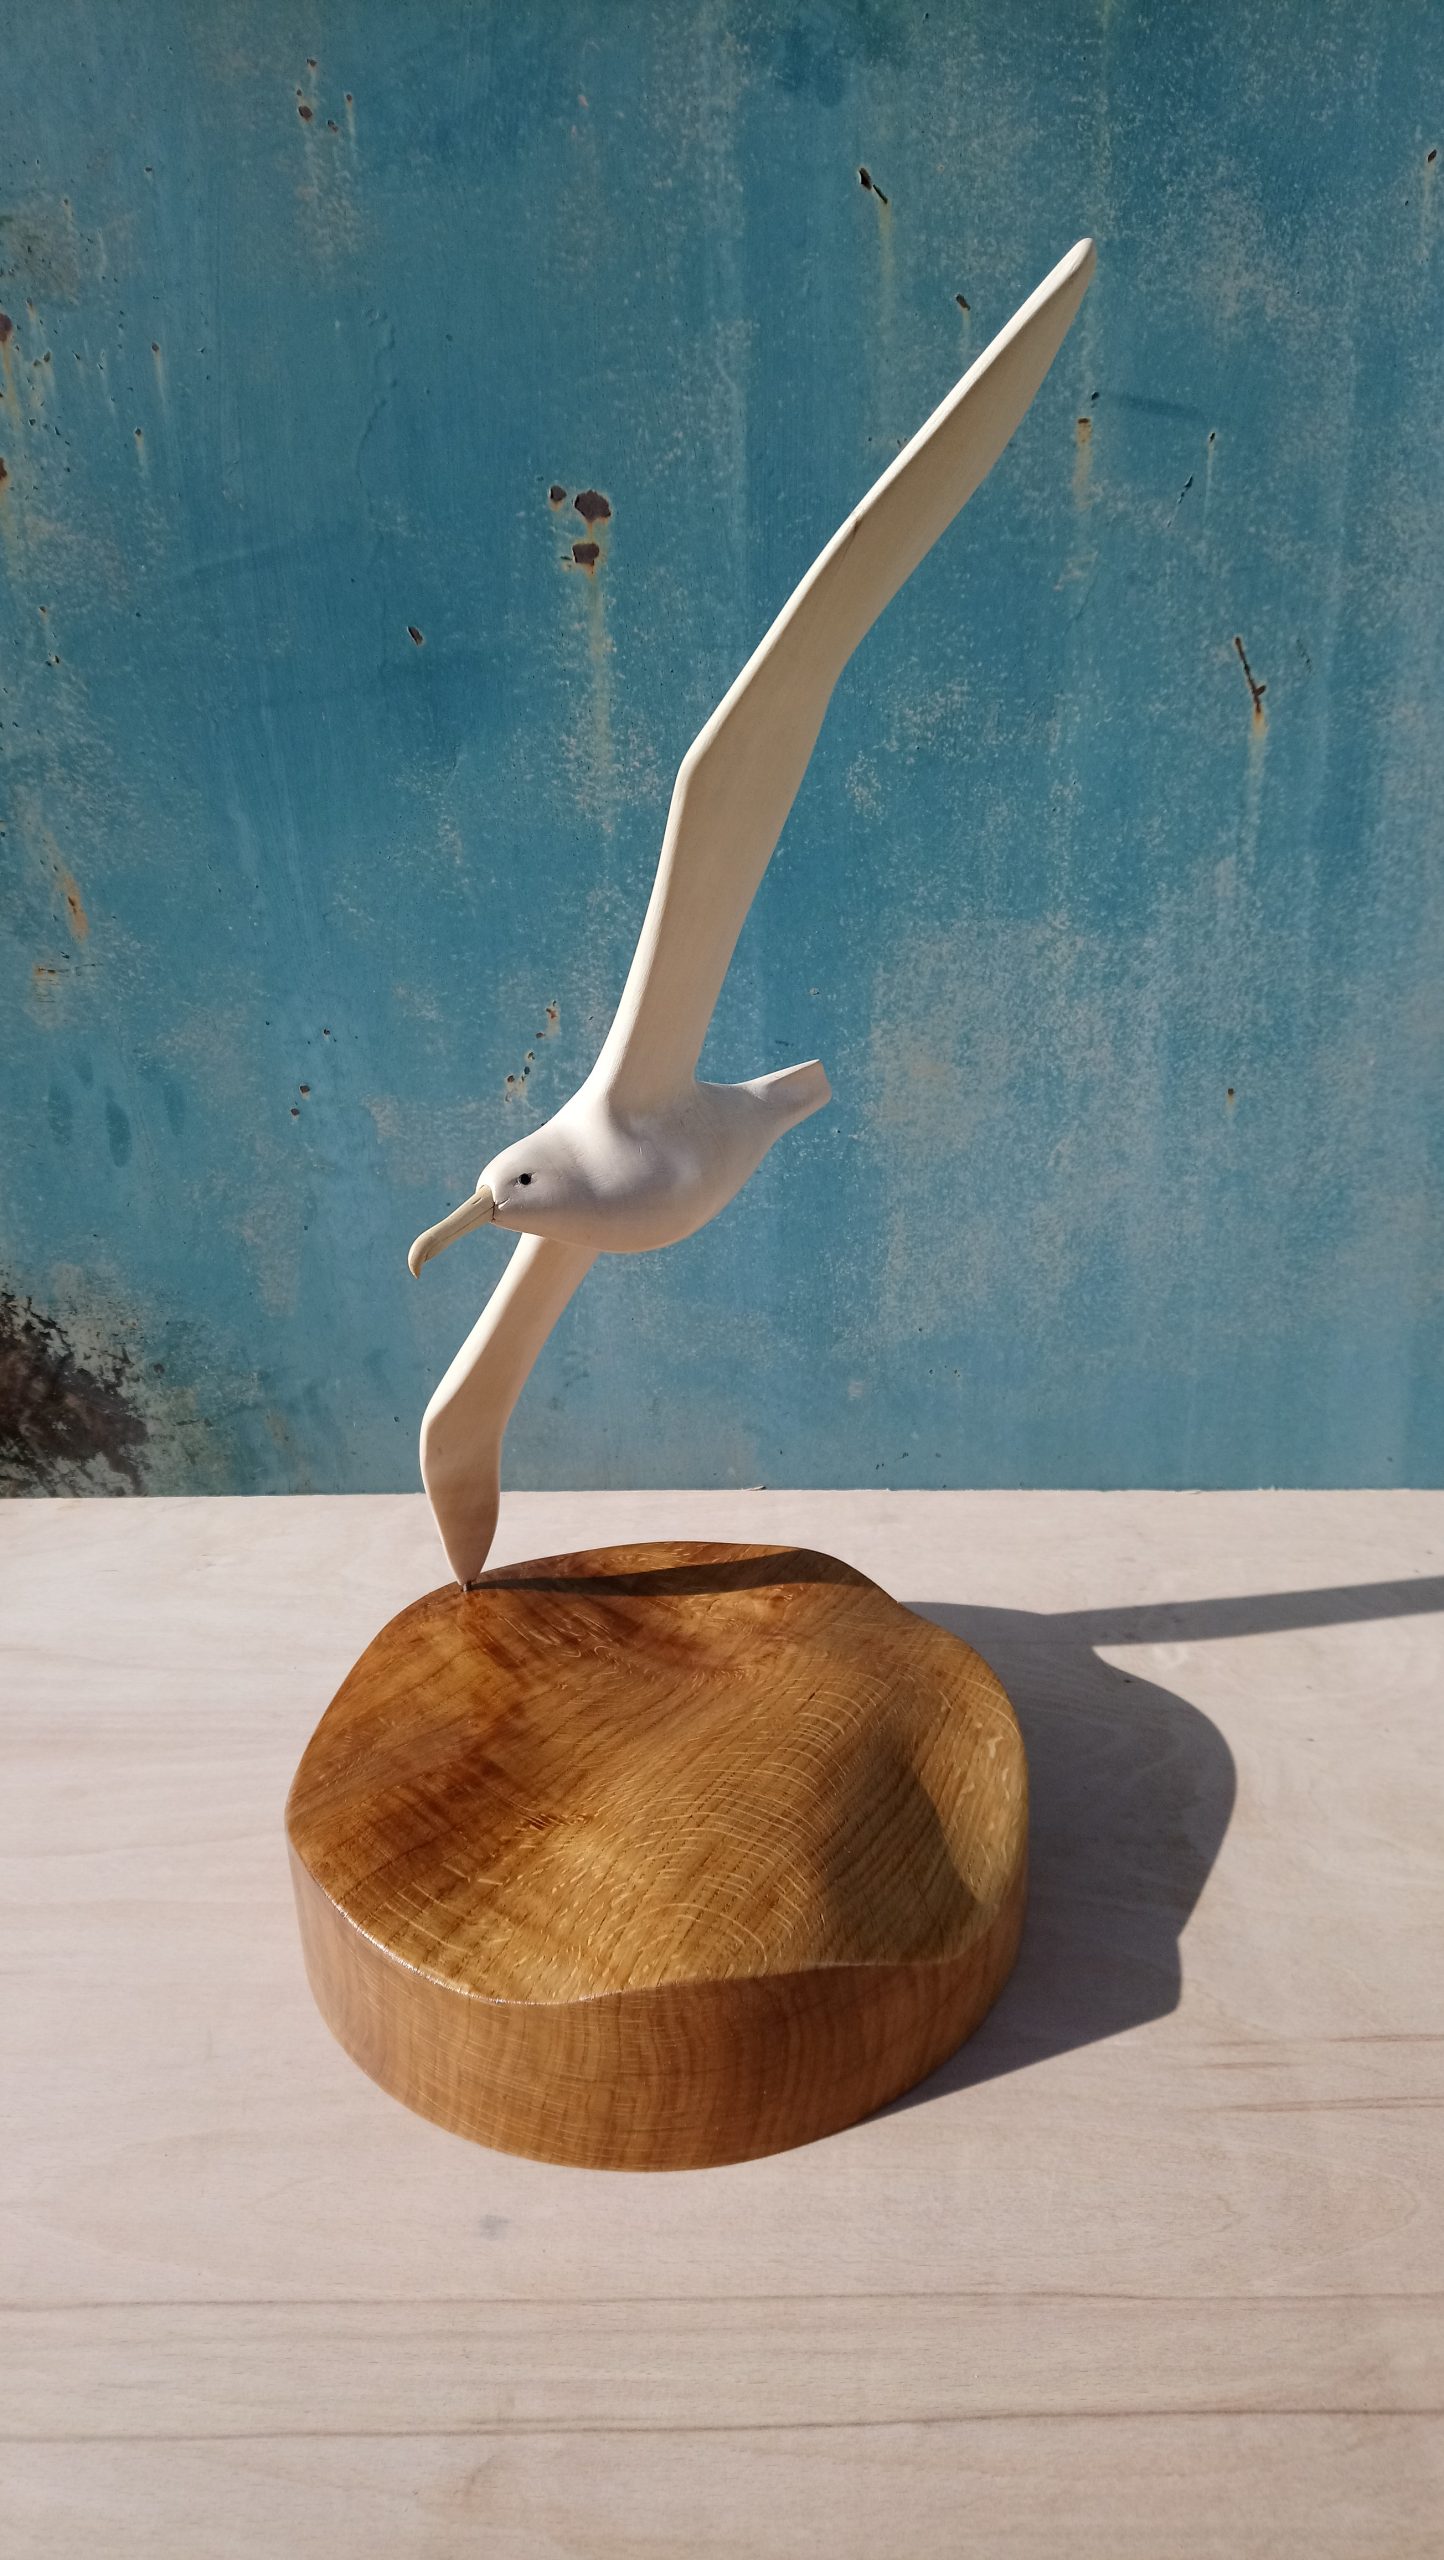 Wooden sculpture of an albatross flying